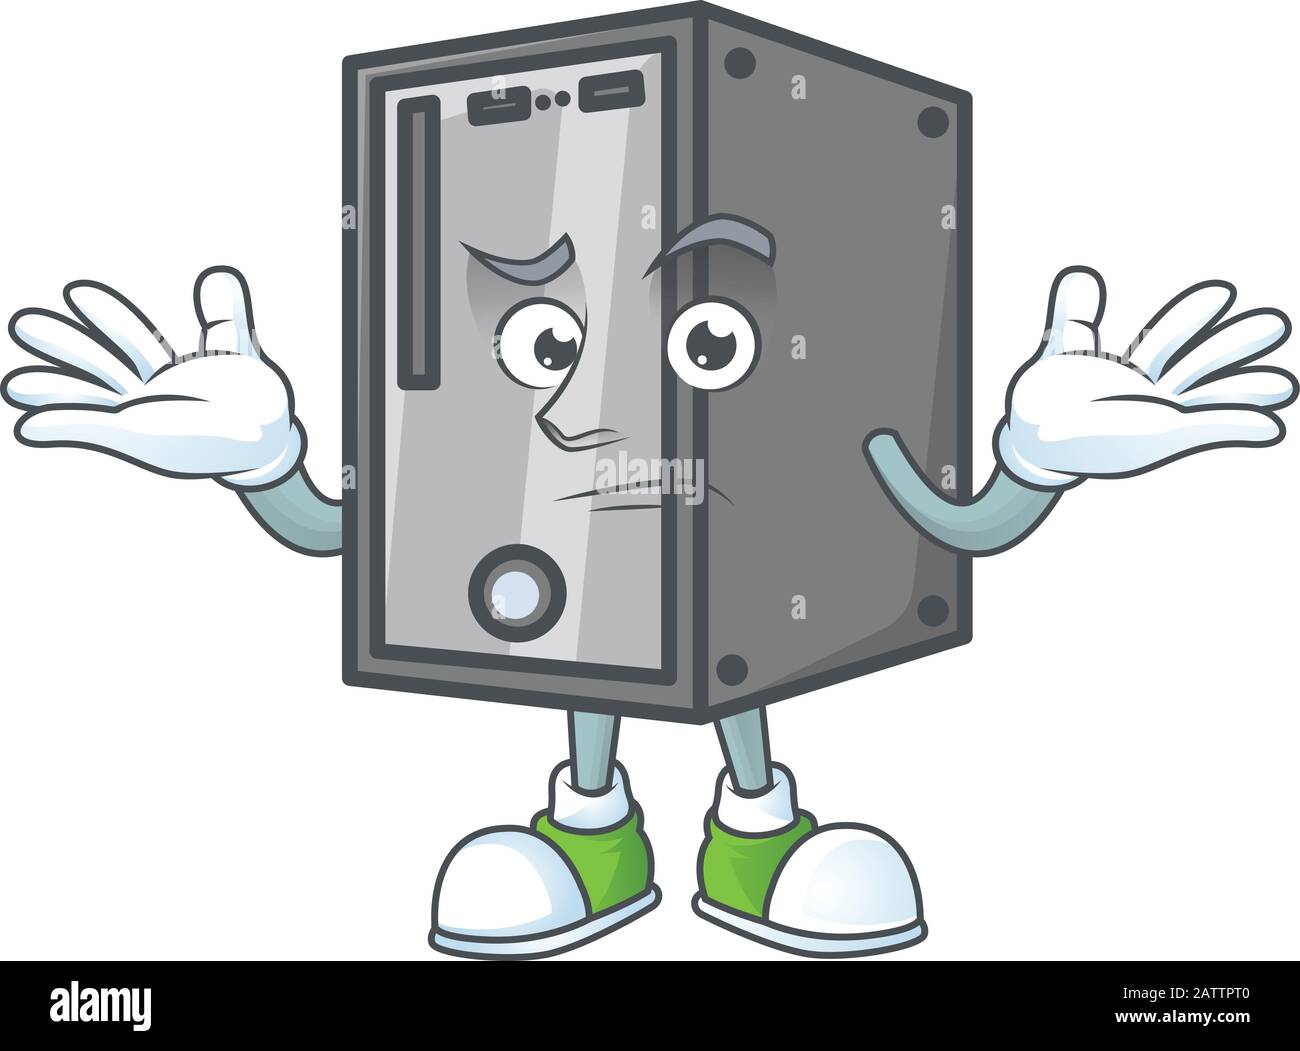 A comical Grinning CPU cartoon design style Stock Vector Image & Art - Alamy